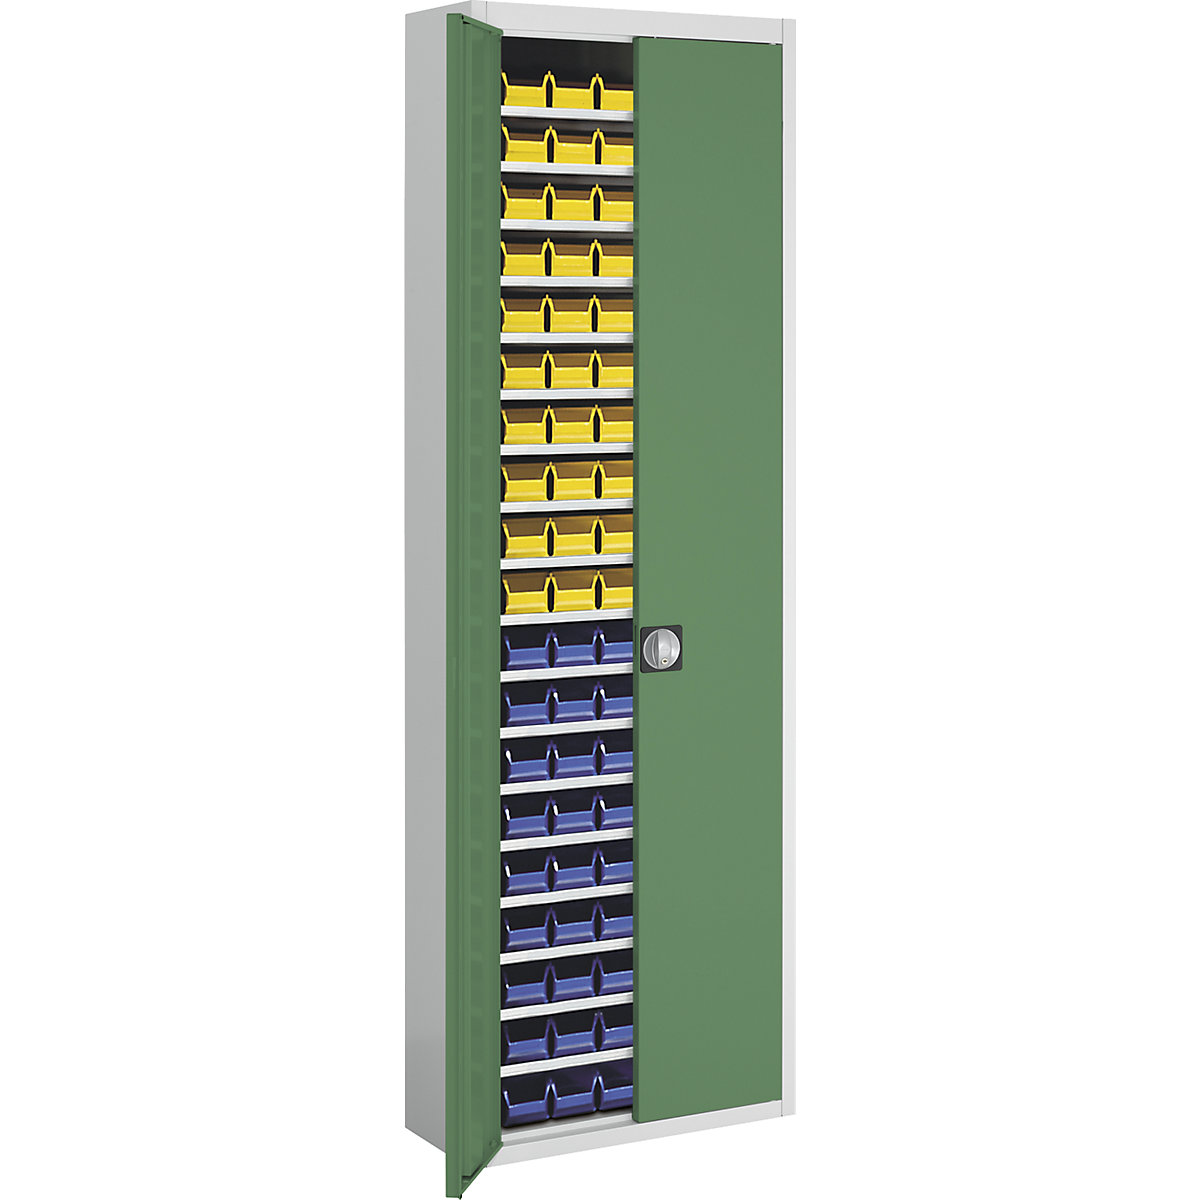 Skladová skříň s přepravkami s viditelným obsahem – mauser, v x š x h 2150 x 680 x 280 mm, dvoubarevné, korpus šedý, dveře zelené, 114 přepravek-8